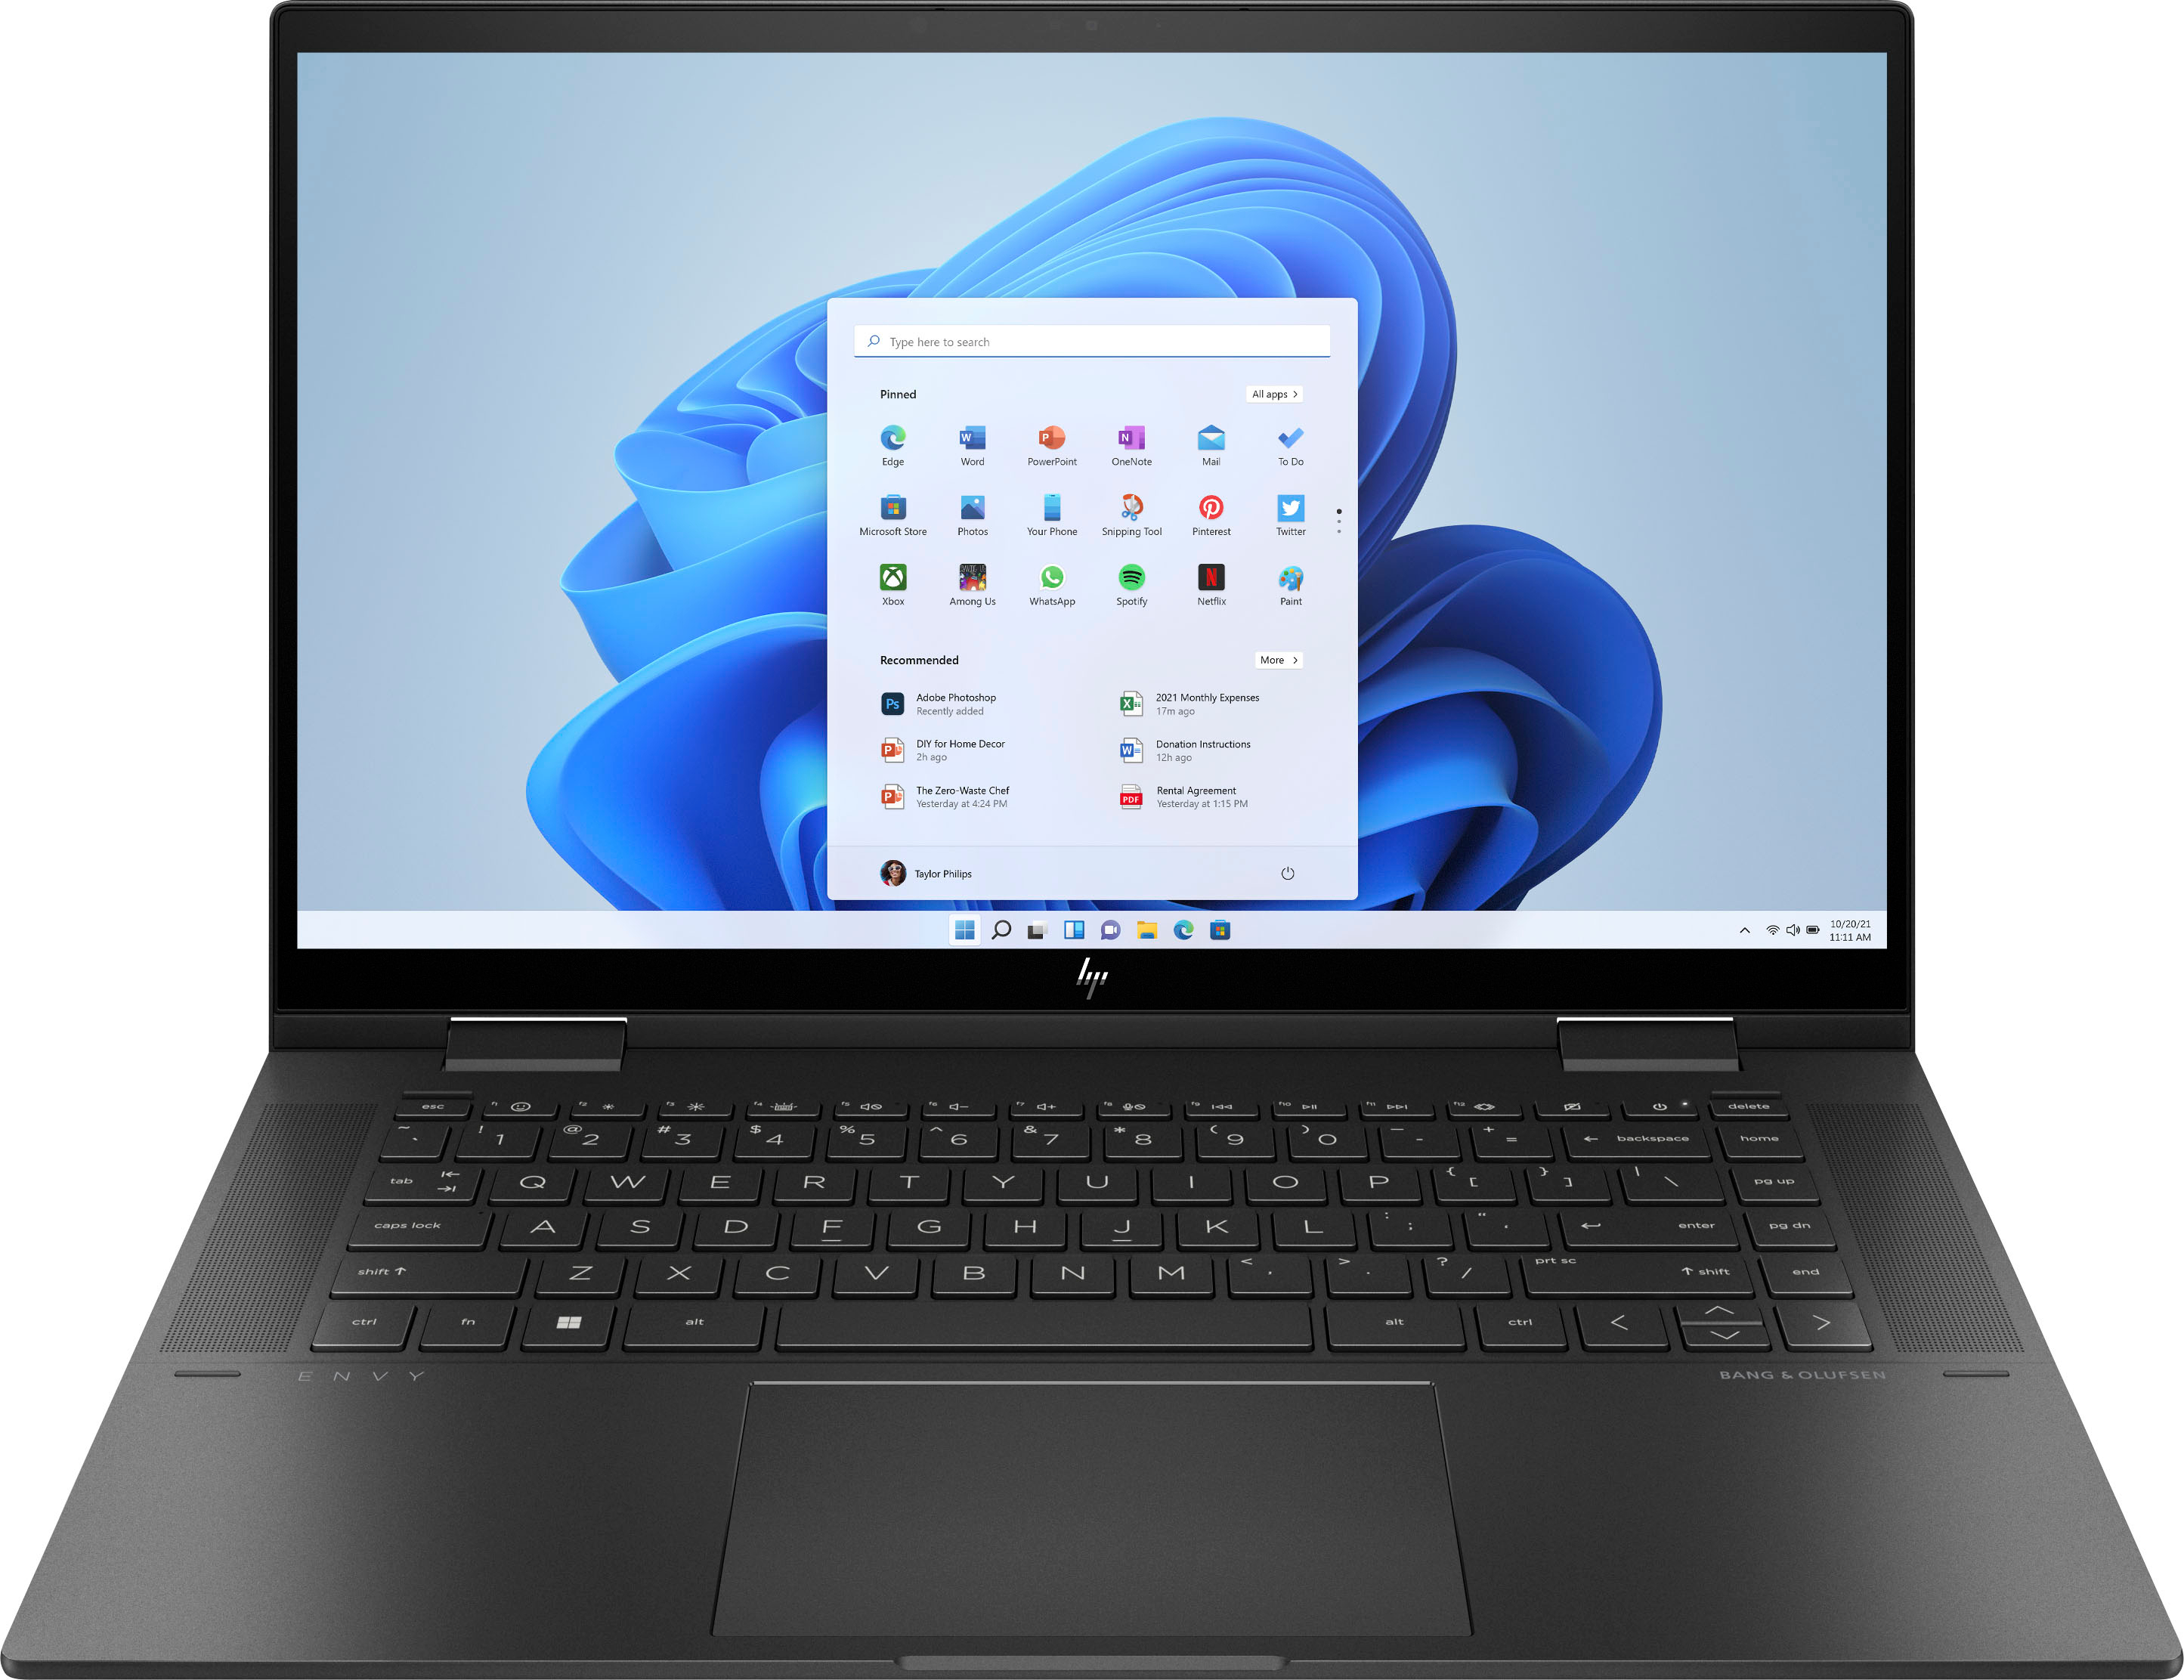 HP ENVY x360 2-in-1 Laptop: 15.6" FHD Touch, Ryzen 5 5625U, 8GB RAM, 256GB SSD $499.99